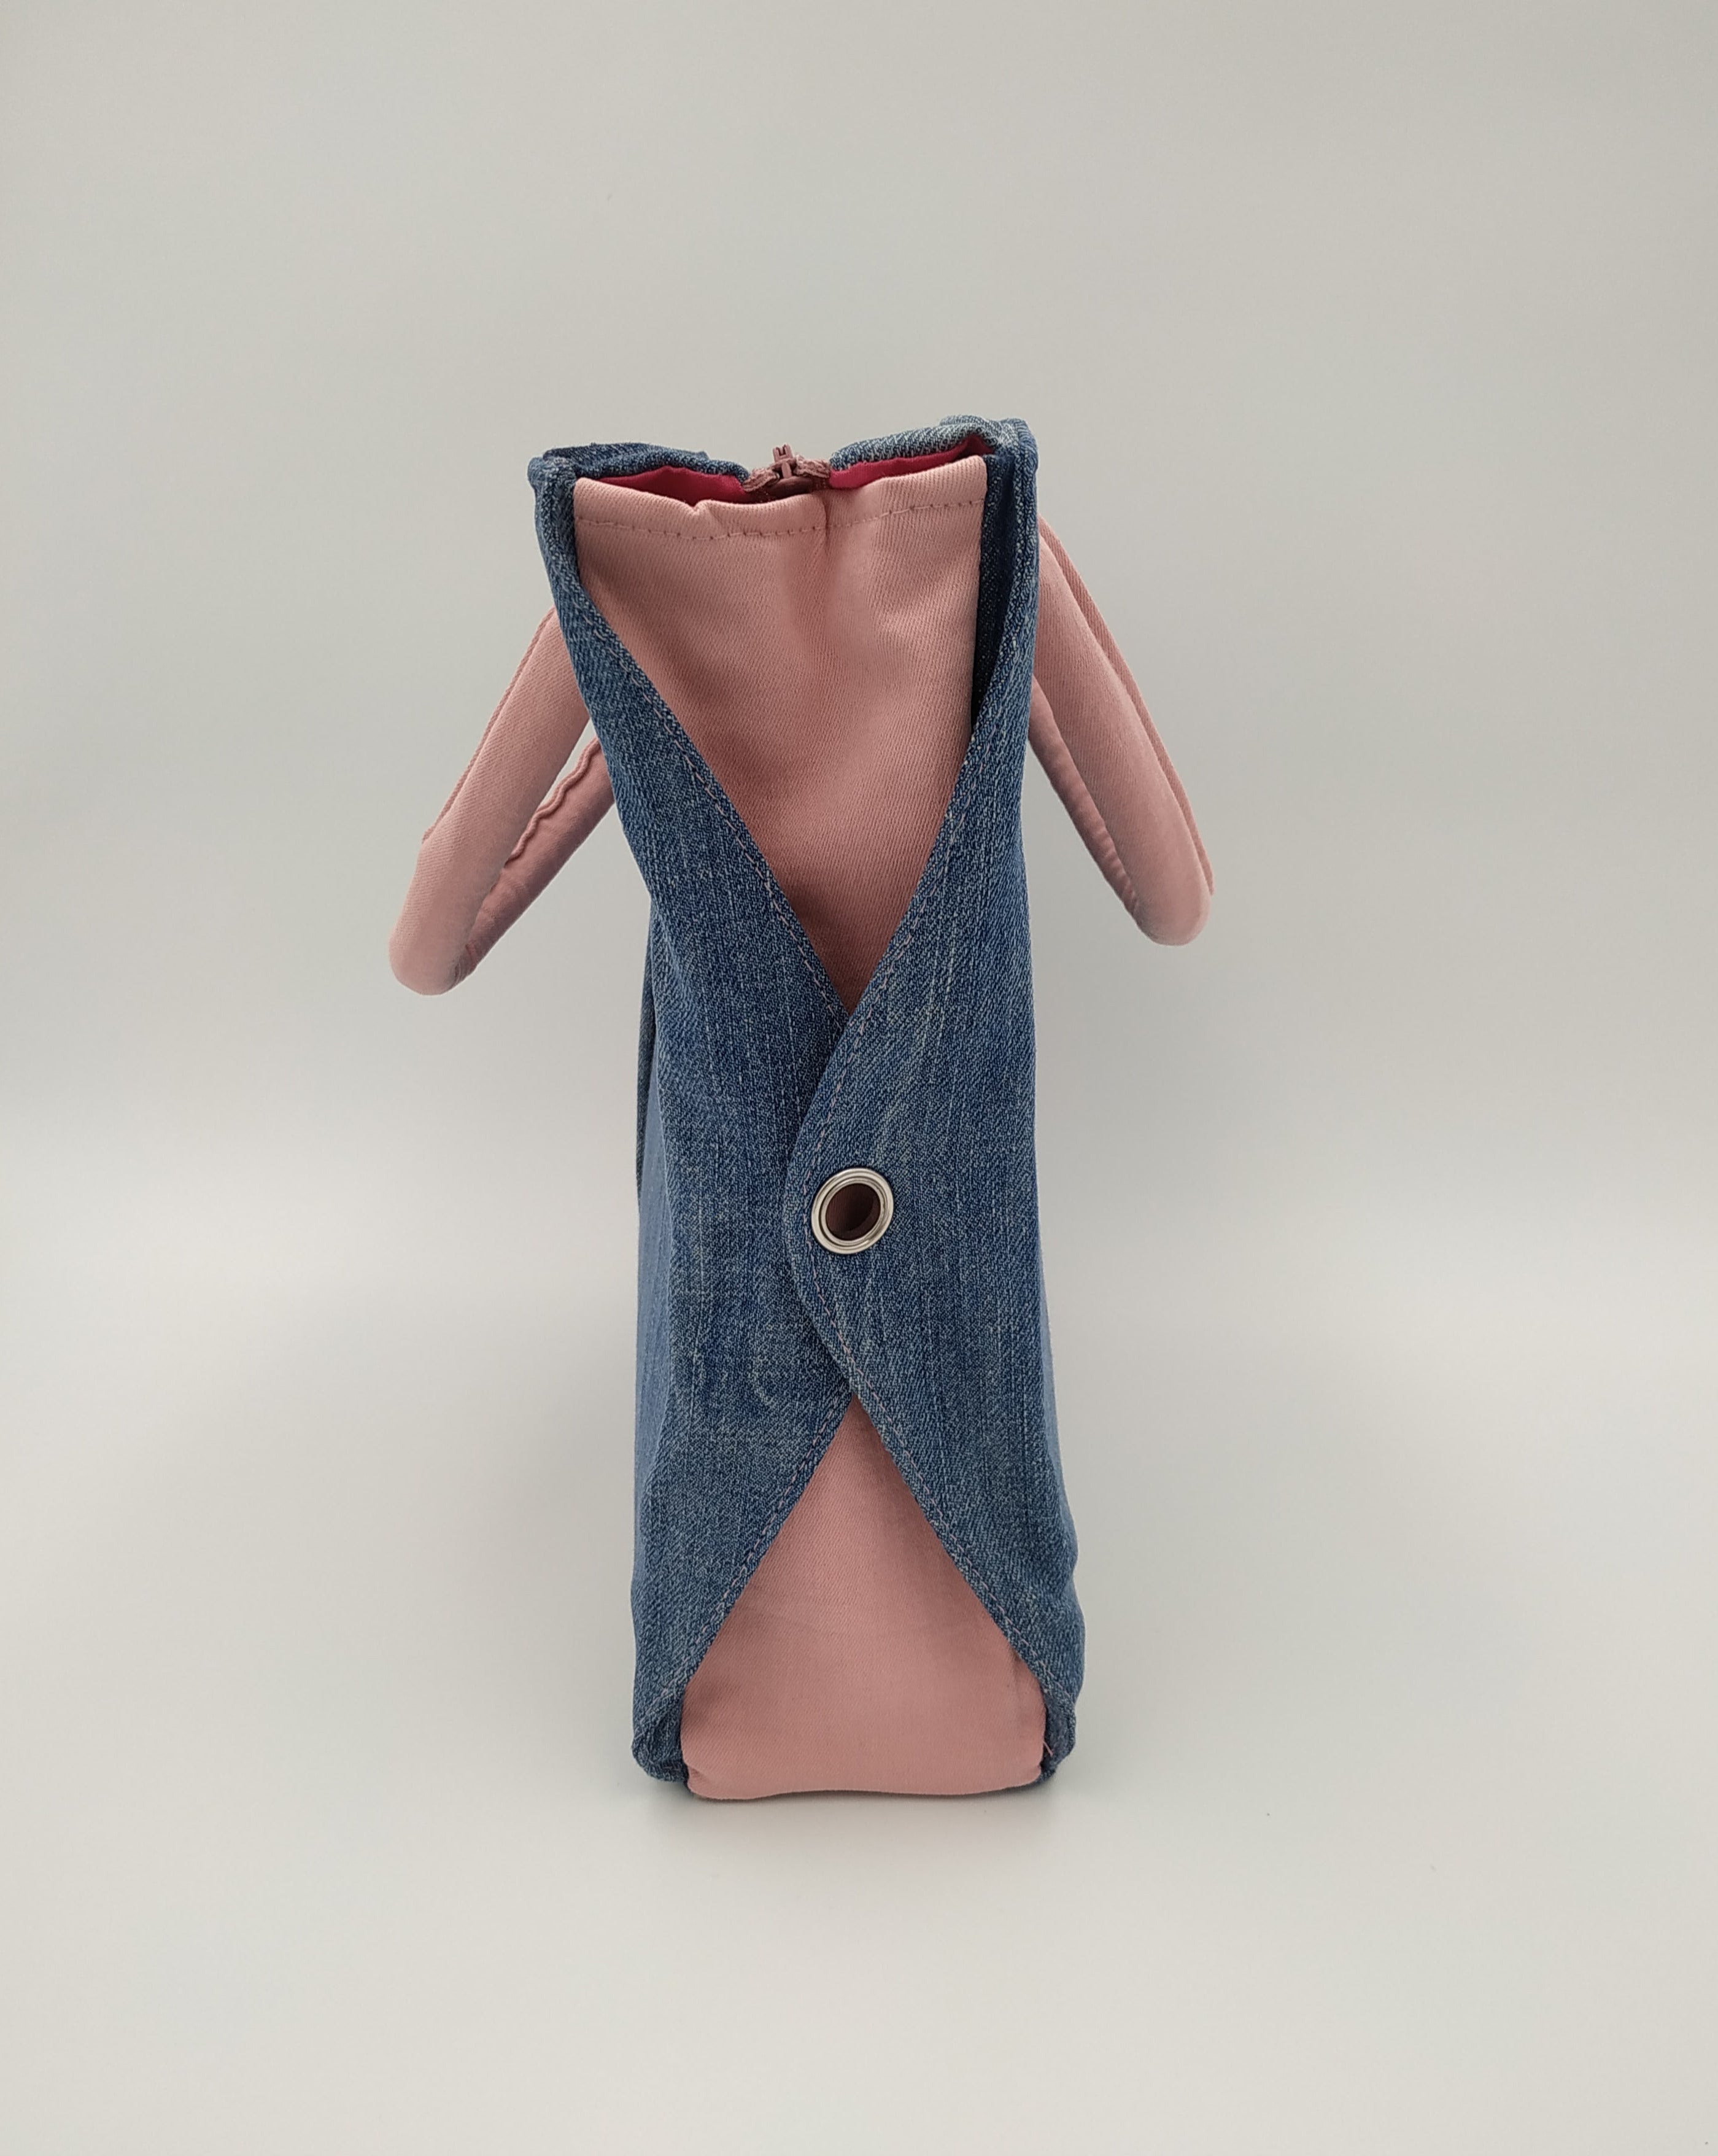 sac bicolore jean et rose - vue de côté avec les rabats jean percés d'un oeillet argenté sur fond de jean rose